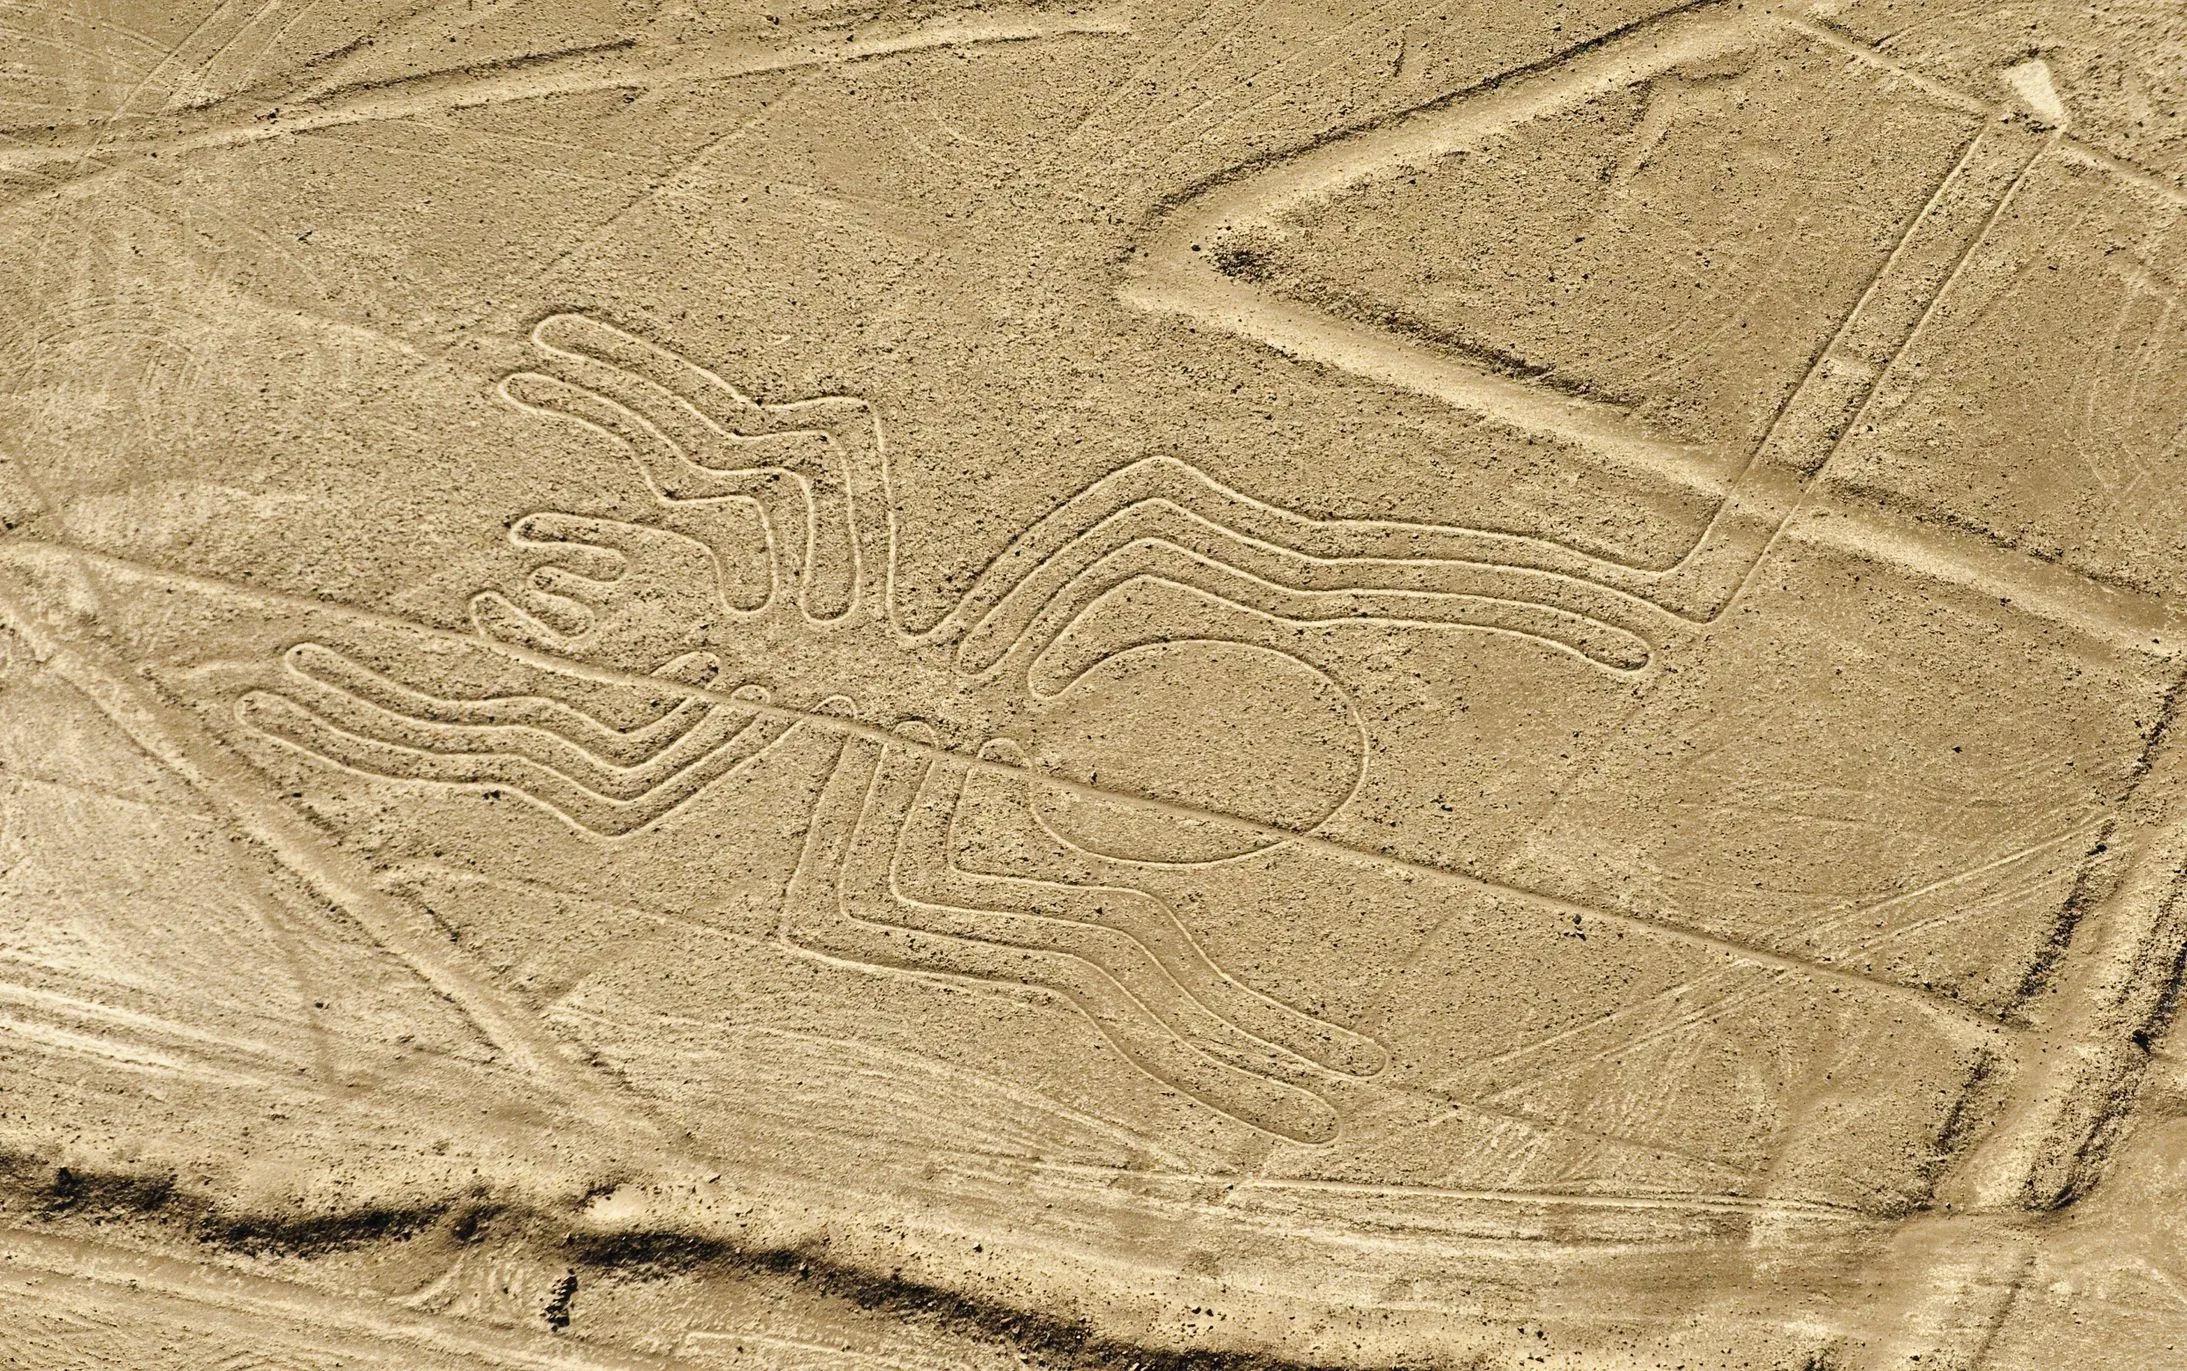 Nazca in Peru, South America | Deserts - Rated 5.4